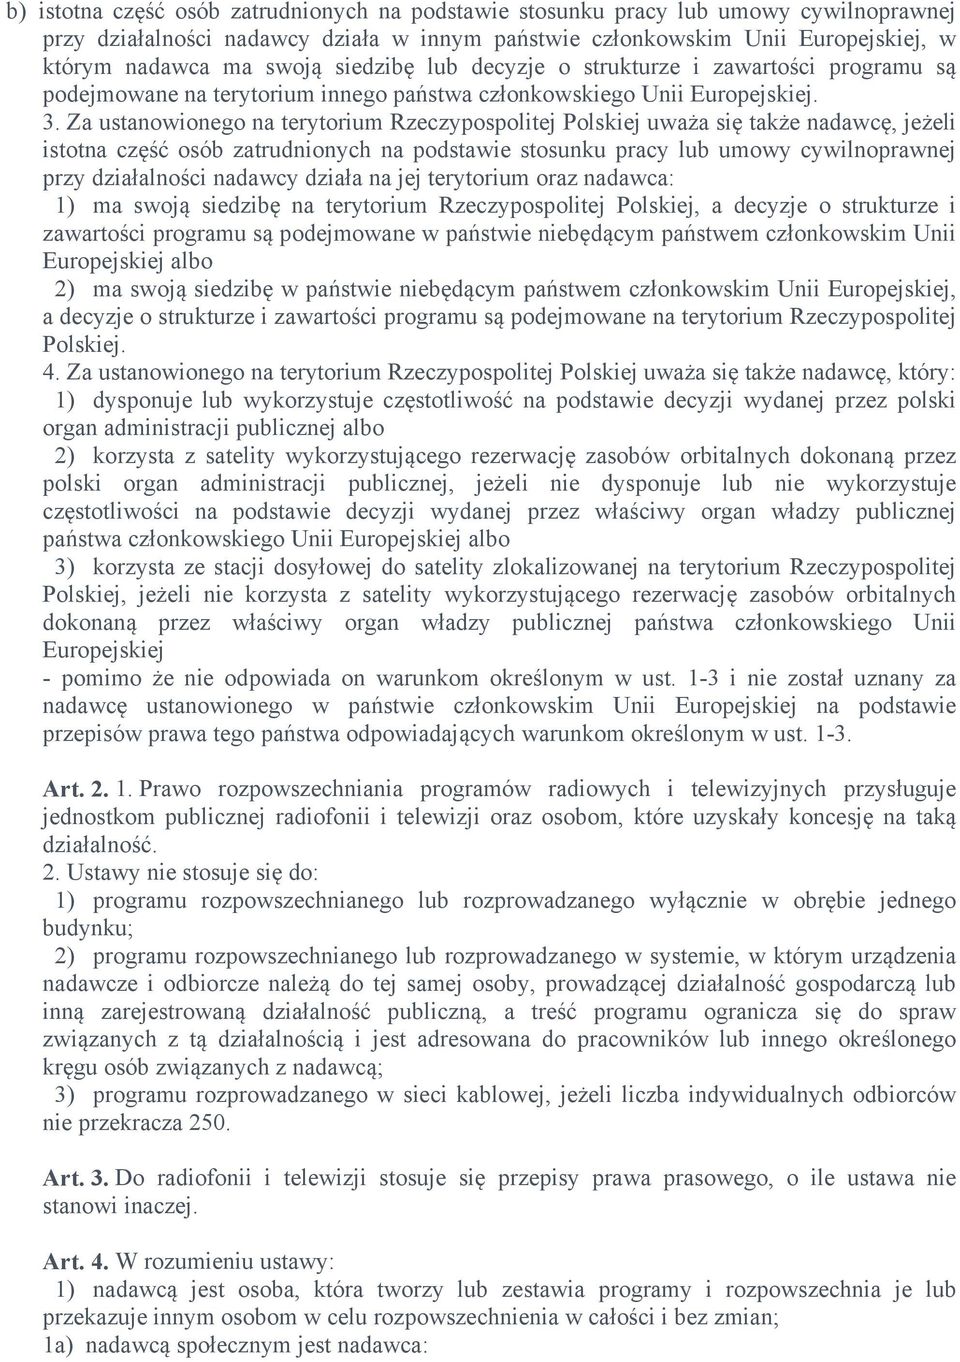 Za ustanowionego na terytorium Rzeczypospolitej Polskiej uważa się także nadawcę, jeżeli istotna część osób zatrudnionych na podstawie stosunku pracy lub umowy cywilnoprawnej przy działalności